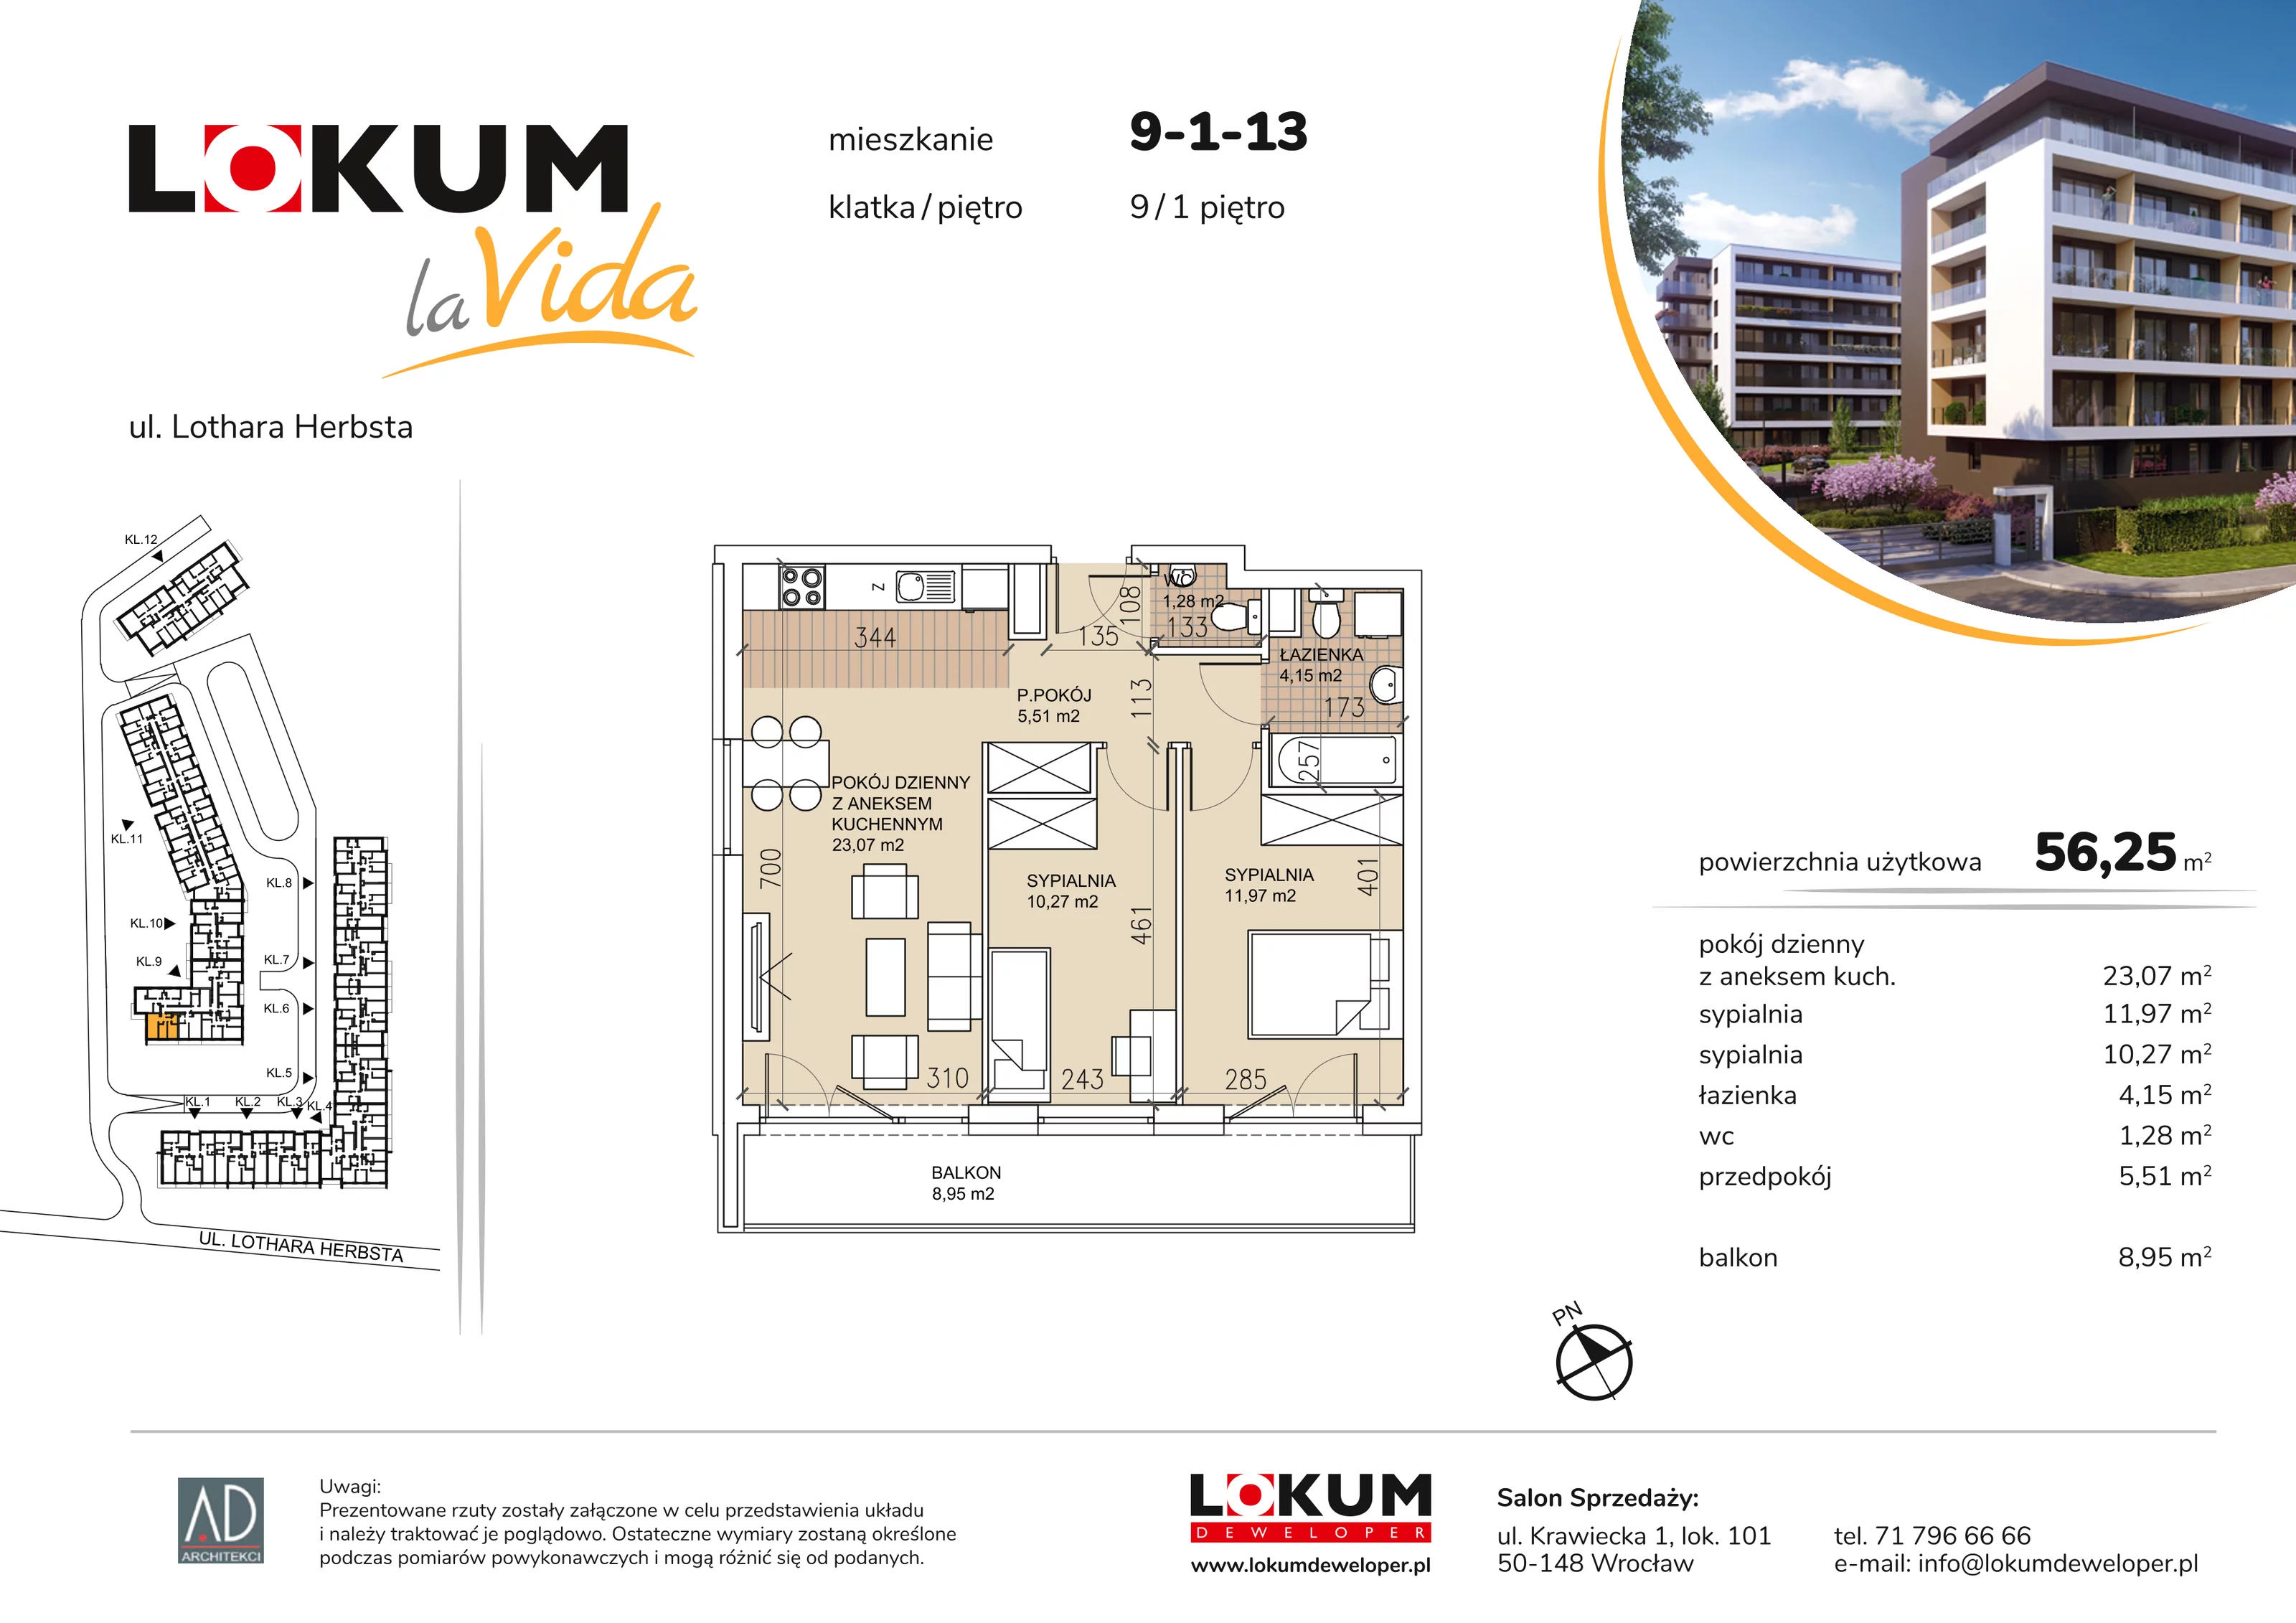 Mieszkanie 56,25 m², piętro 1, oferta nr 9-1-13, Lokum la Vida, Wrocław, Sołtysowice, ul. Lothara Herbsta